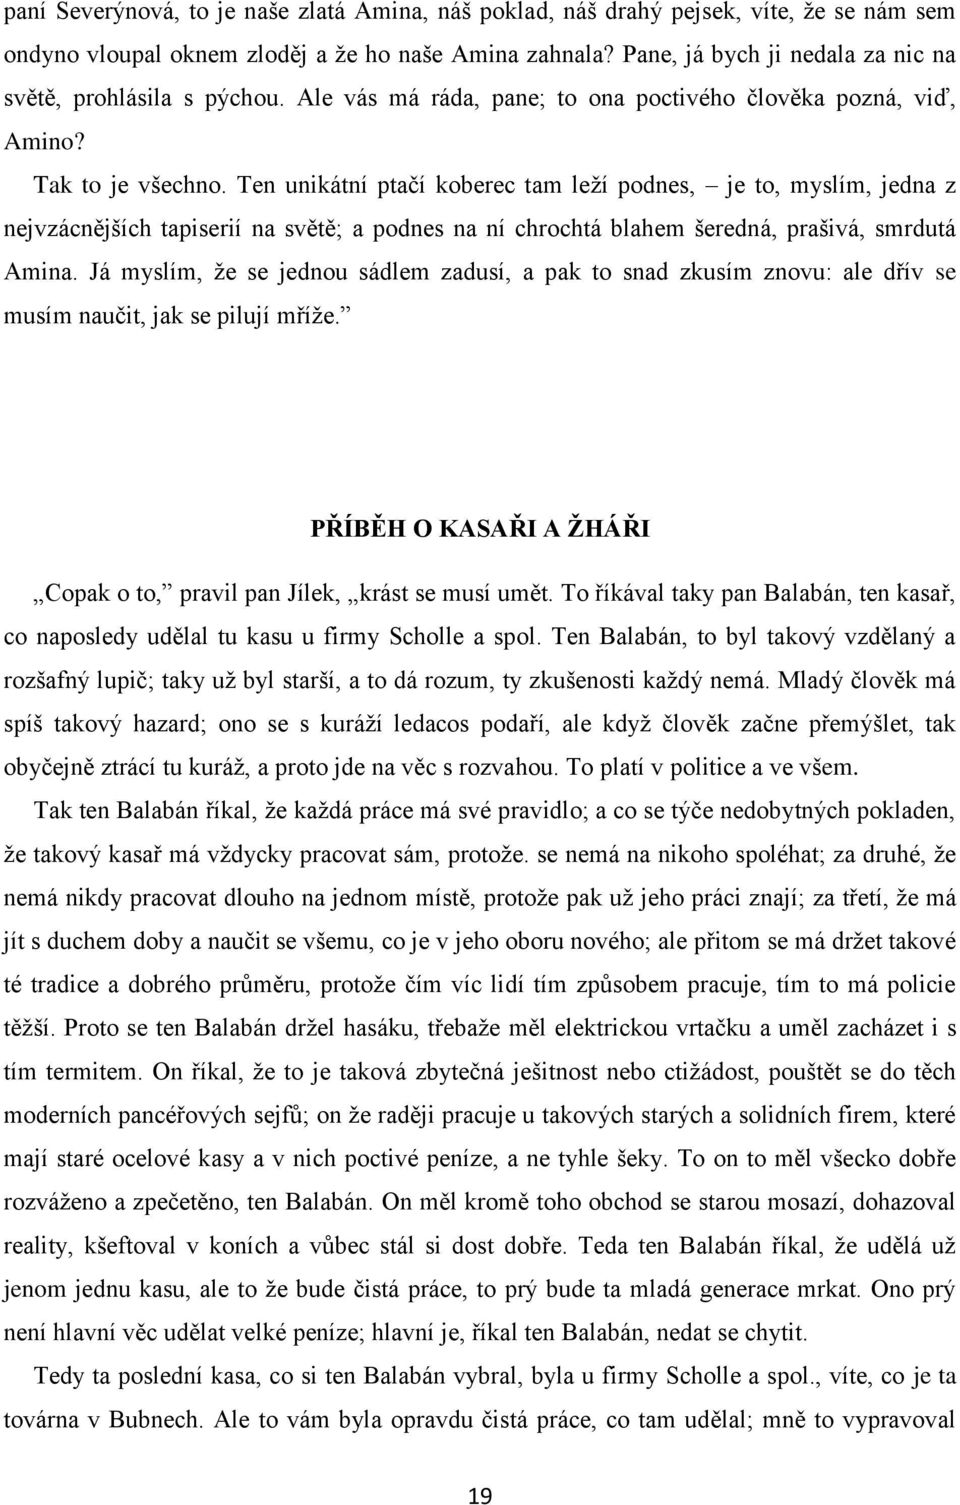 KAREL ČAPEK POVÍDKY Z DRUHÉ KAPSY 1 - PDF Stažení zdarma